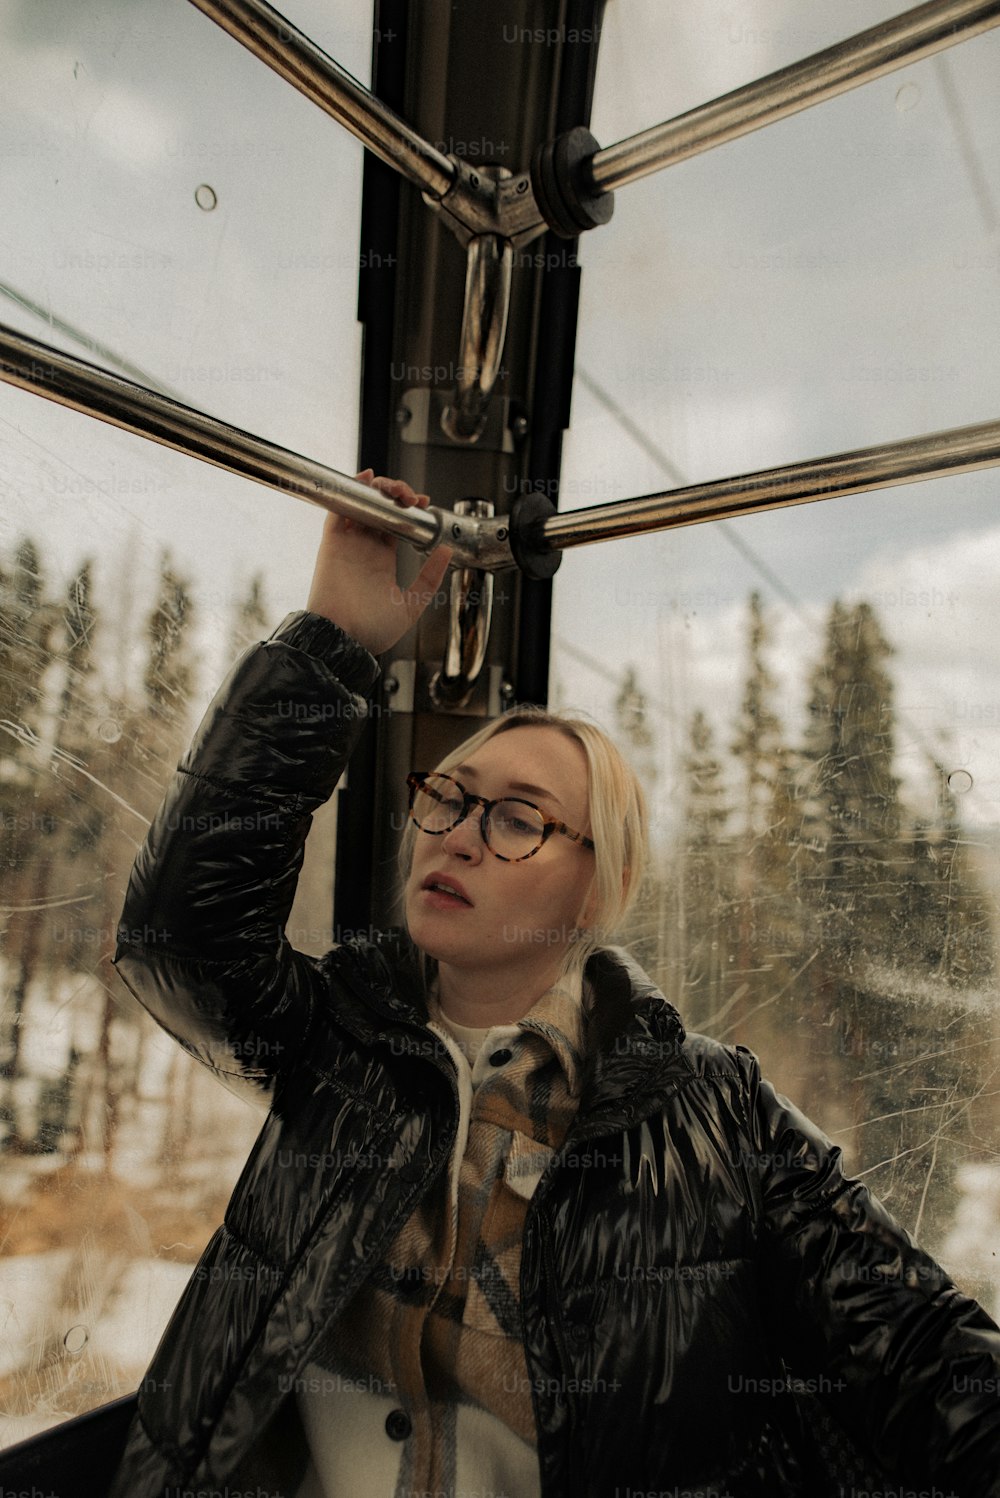 Una mujer con chaqueta negra y gafas en un tren